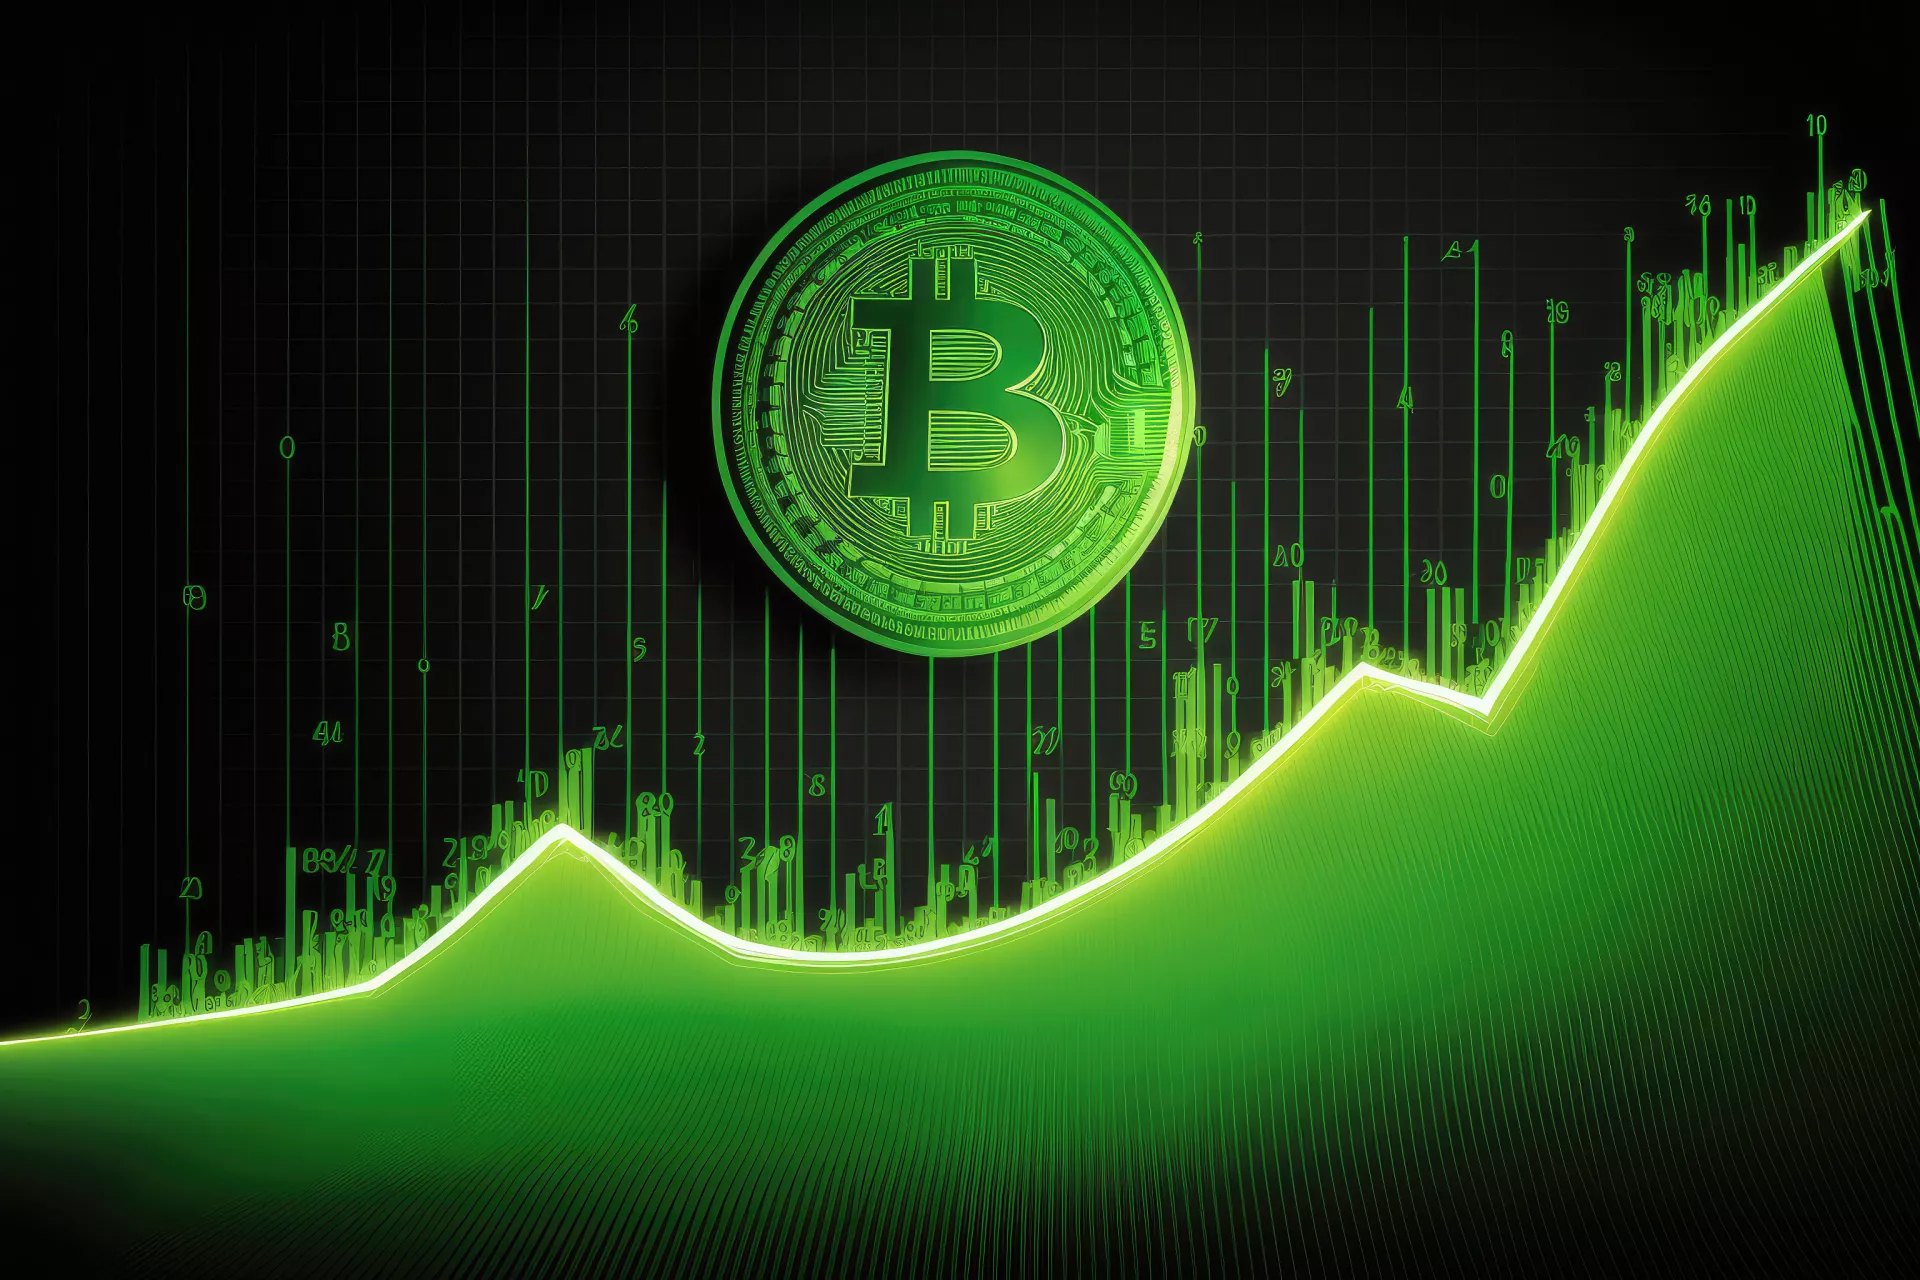 Bitcoin up, BTC green